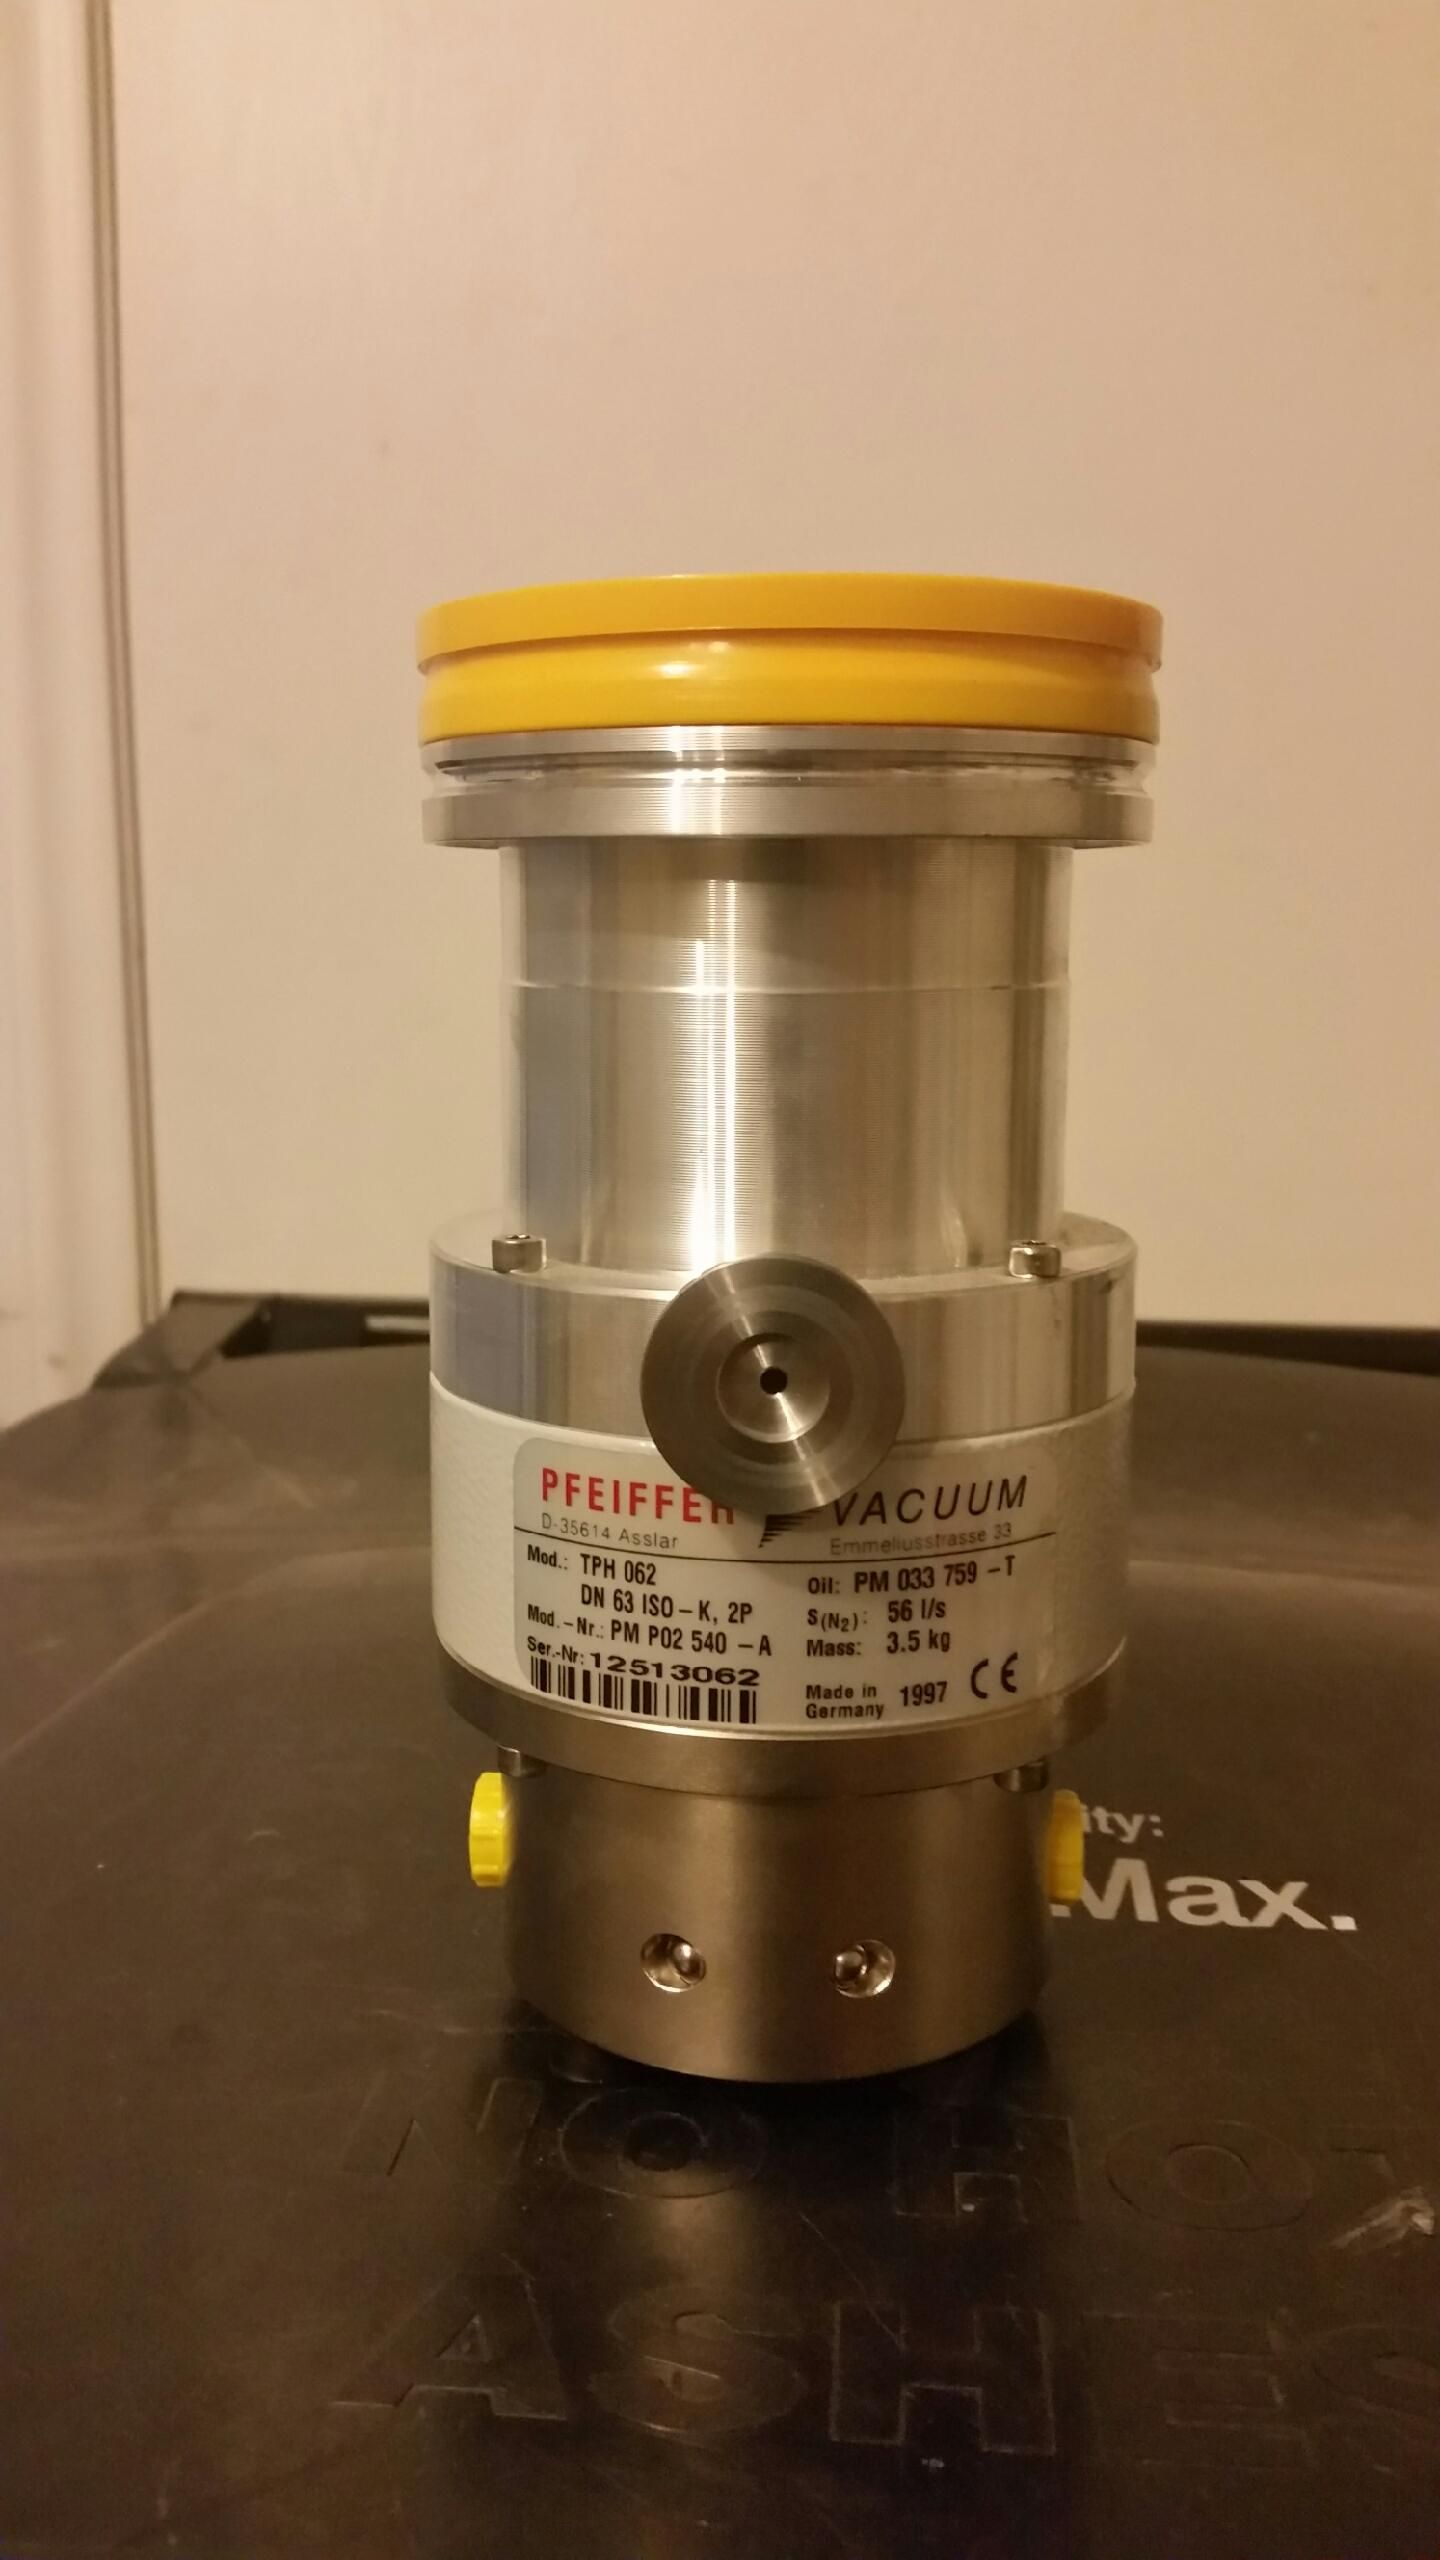 Pfeiffer vacuum for Mass Spectrometer